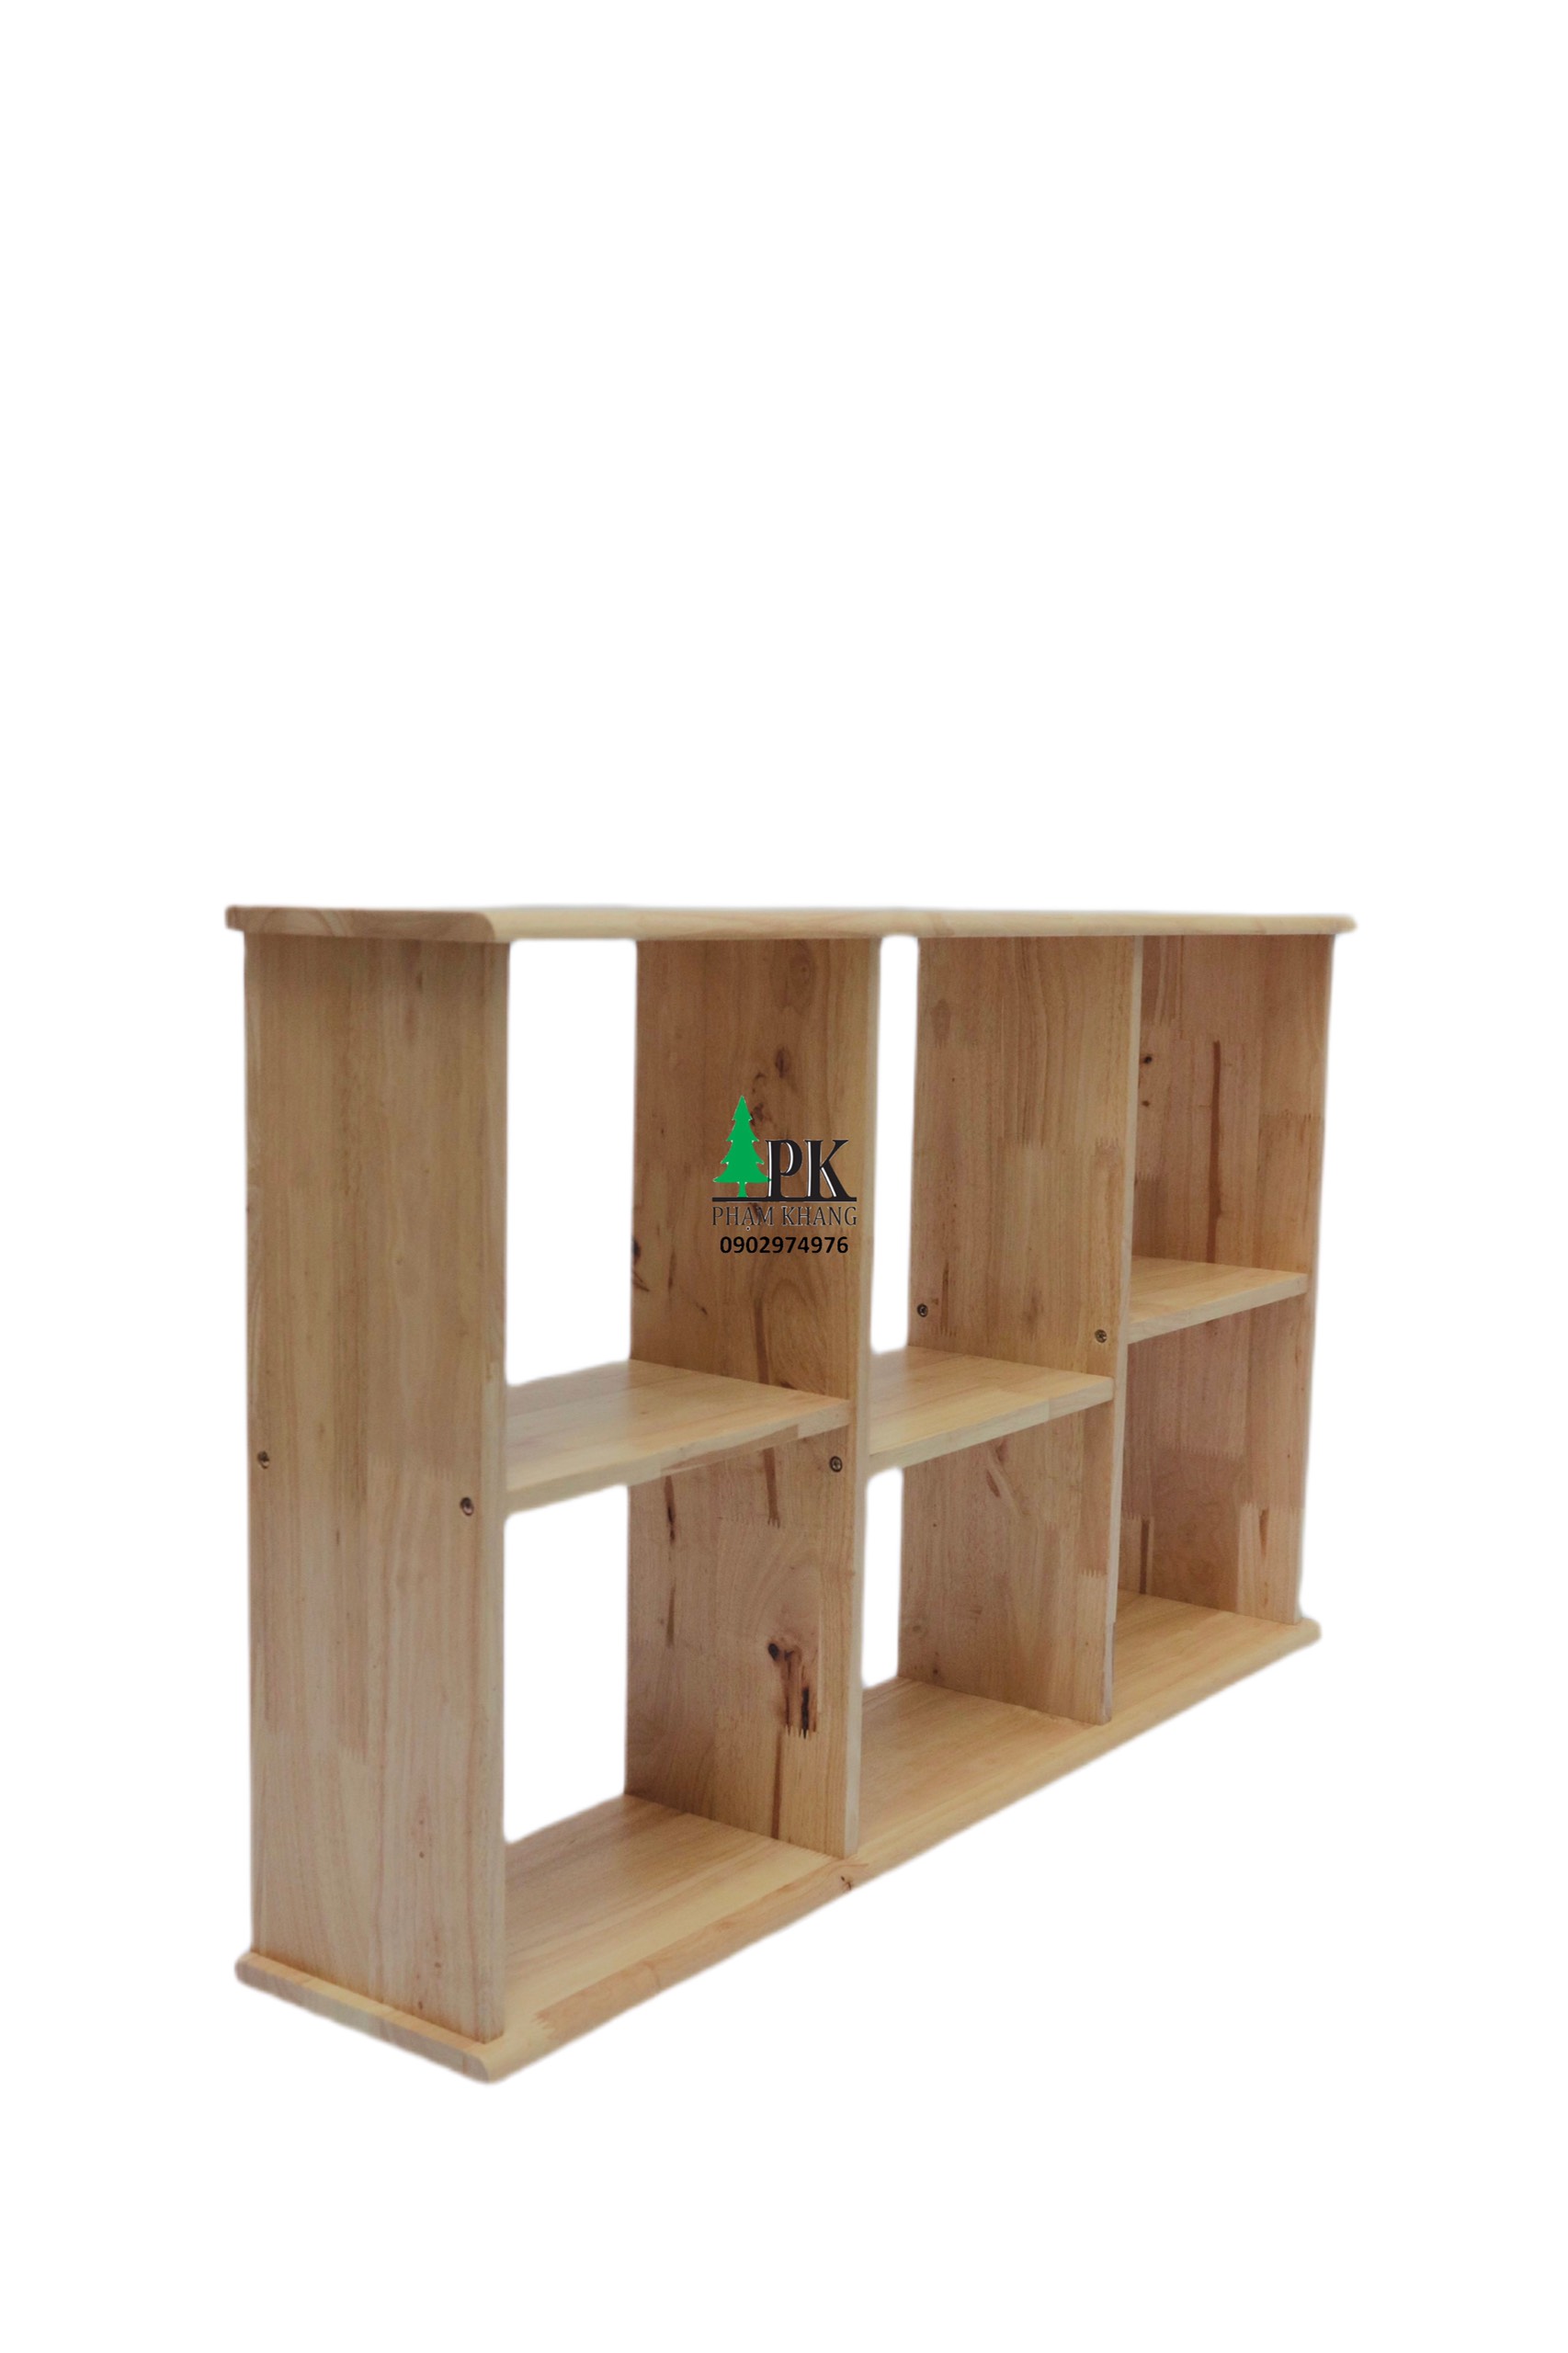 Kệ sách gỗ treo tường/ để bàn Phạm Khang rộng - Gỗ cao su tự nhiên màu Gỗ Tự Nhiên/ Vàng Cherry - Kích thước rộng 100 cm